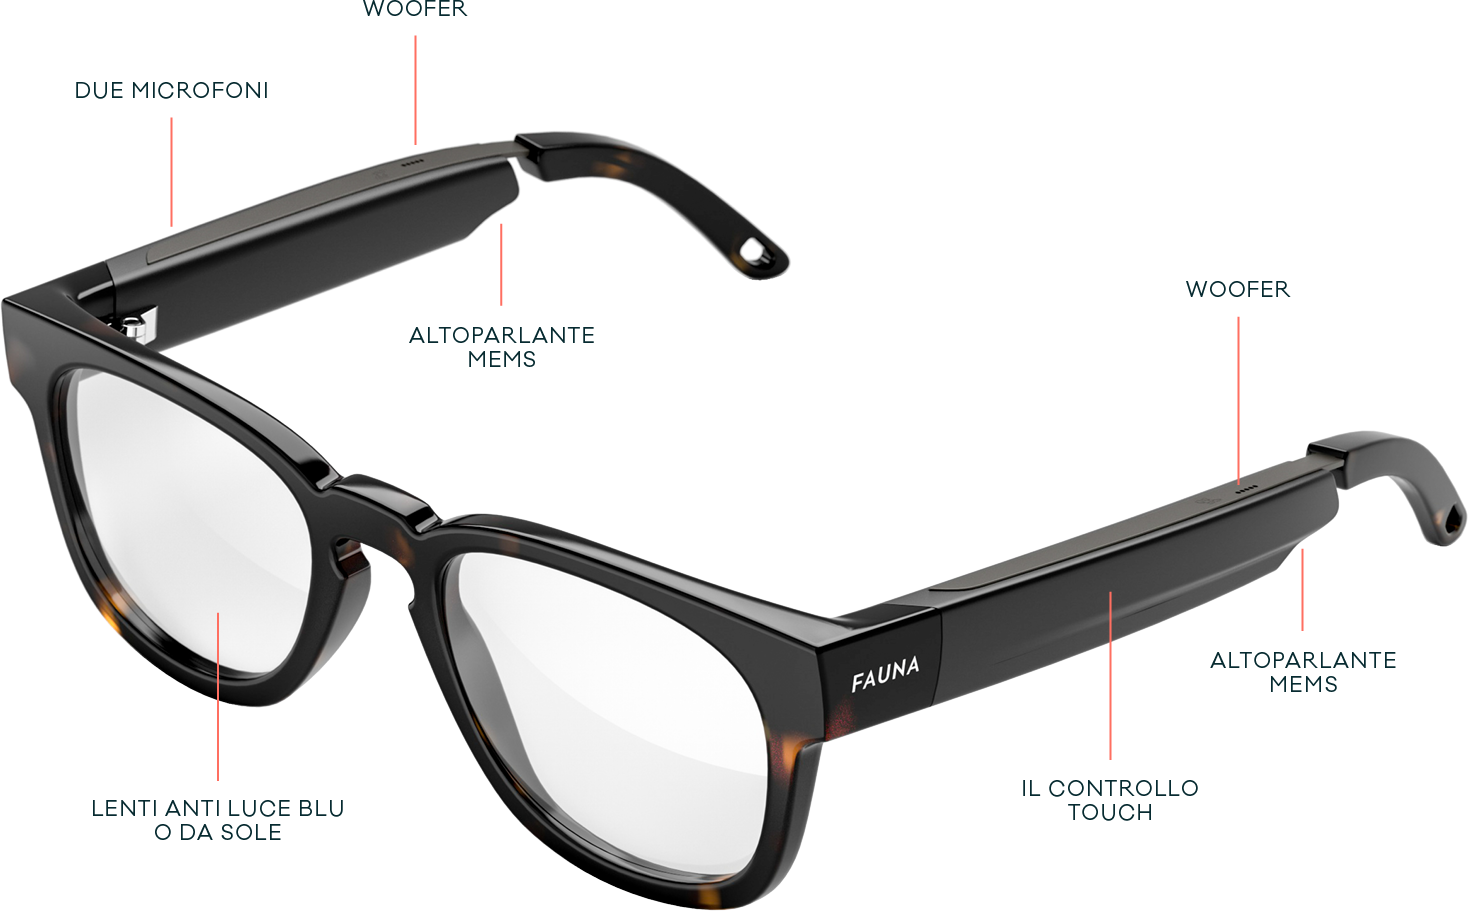 Doogee AJ01: occhiali (non) intelligenti: Un nuovo prodotto interessante ma  con un approccio al design non all'avanguardia 